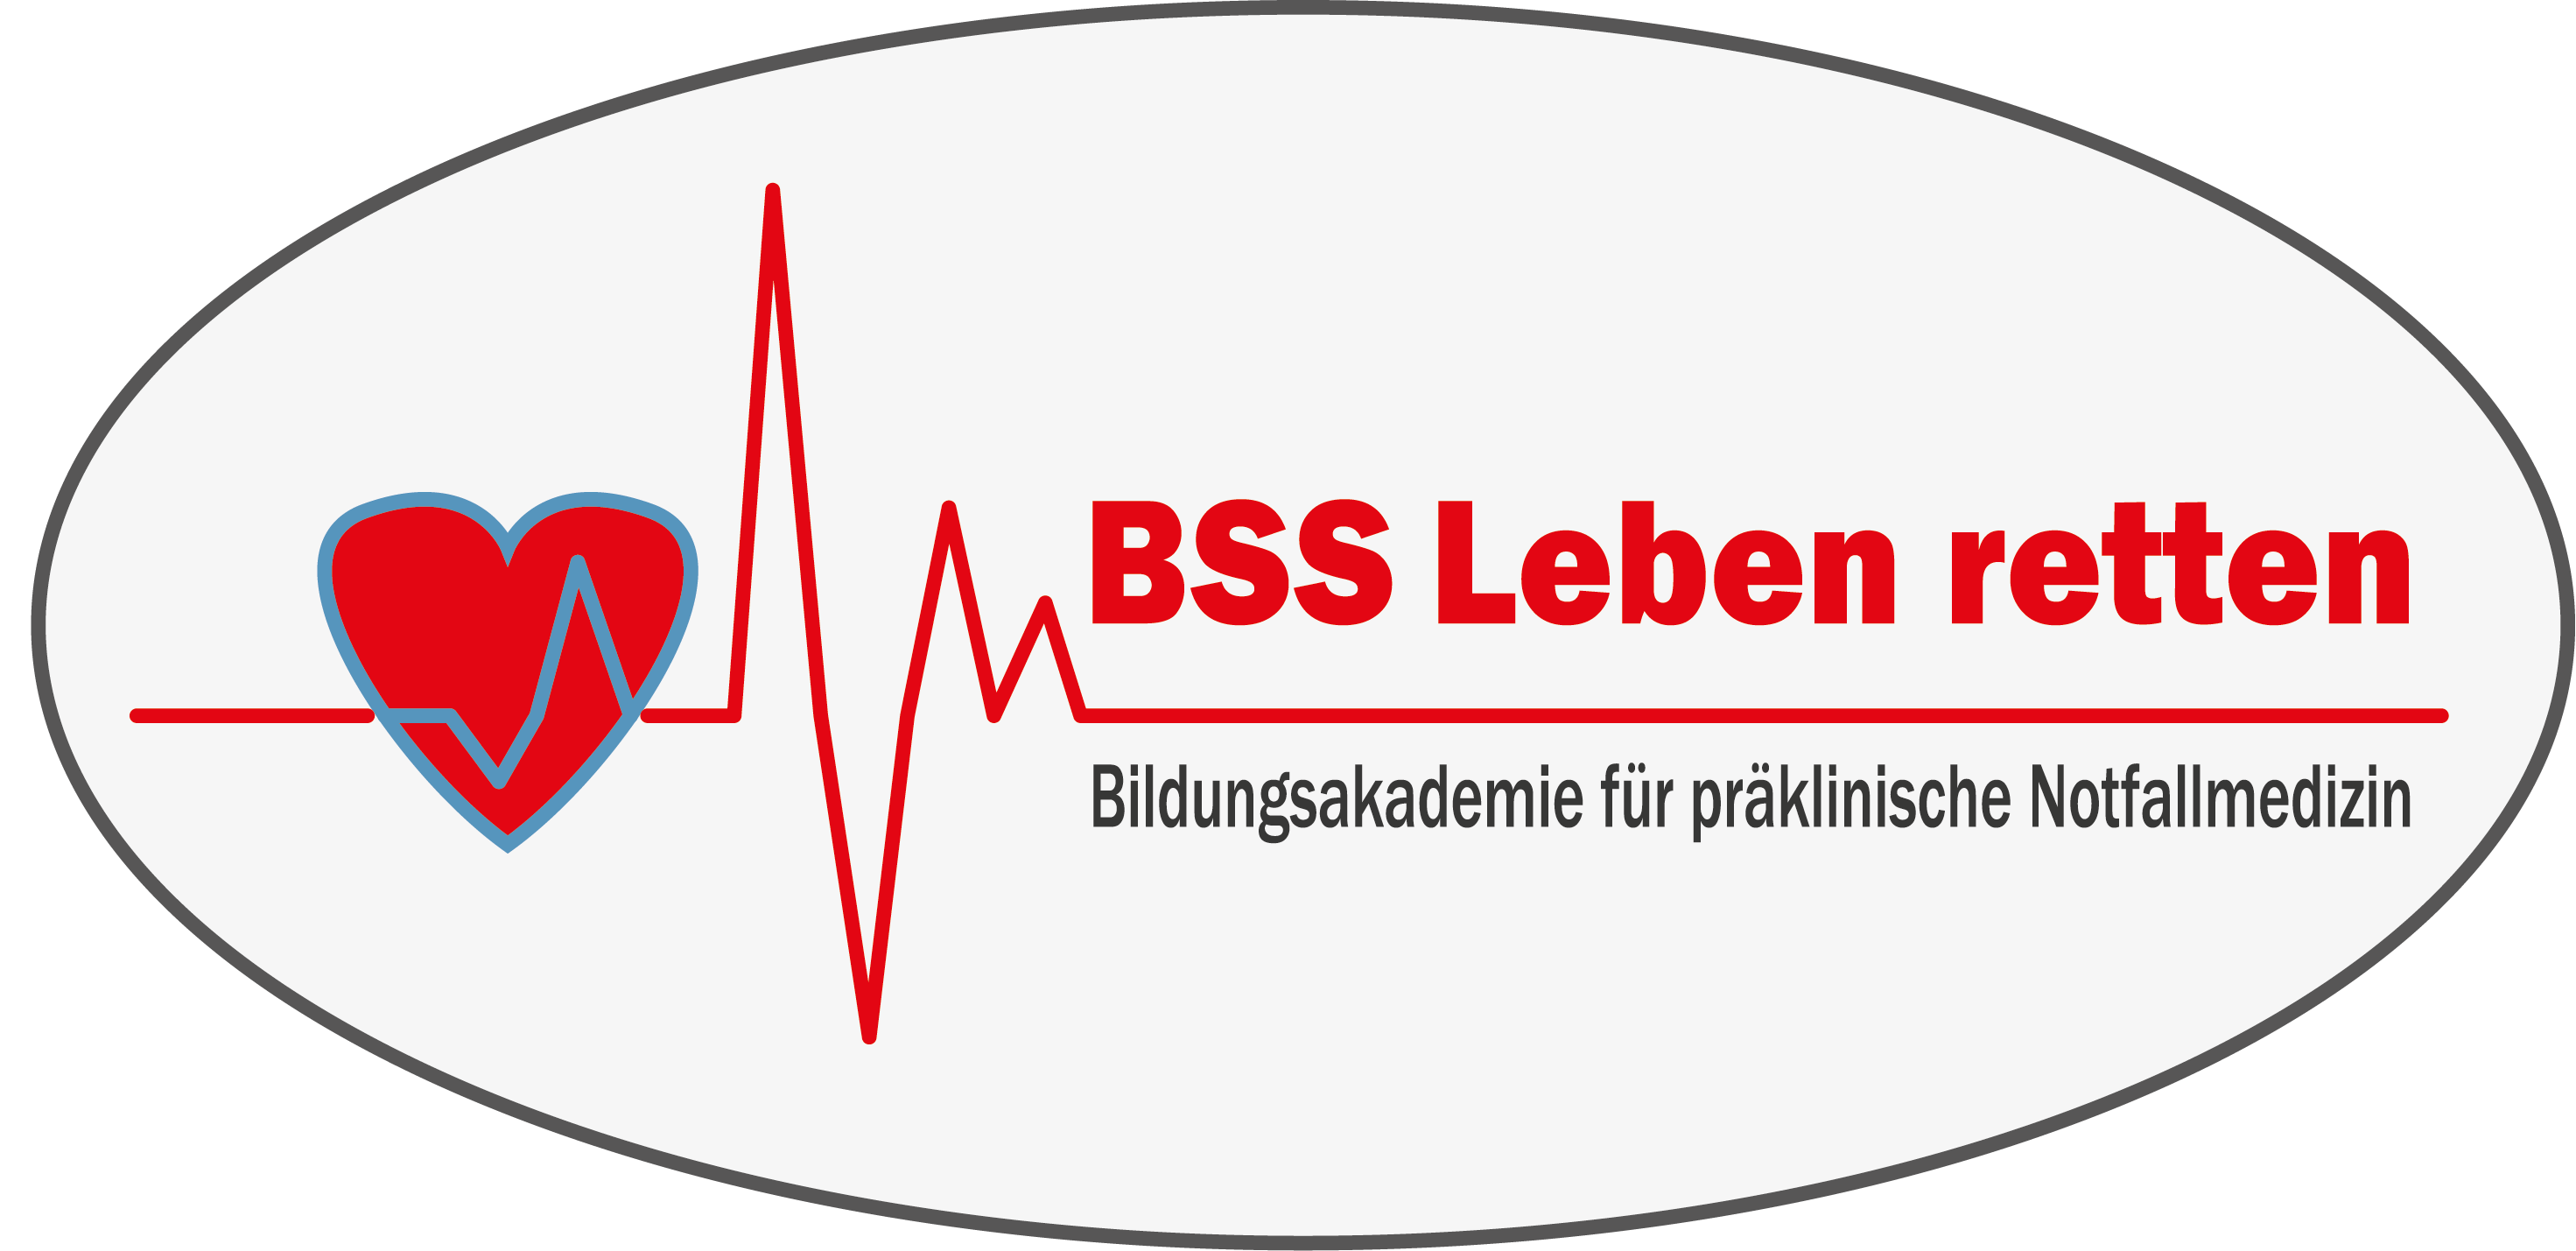 BSS – Leben retten